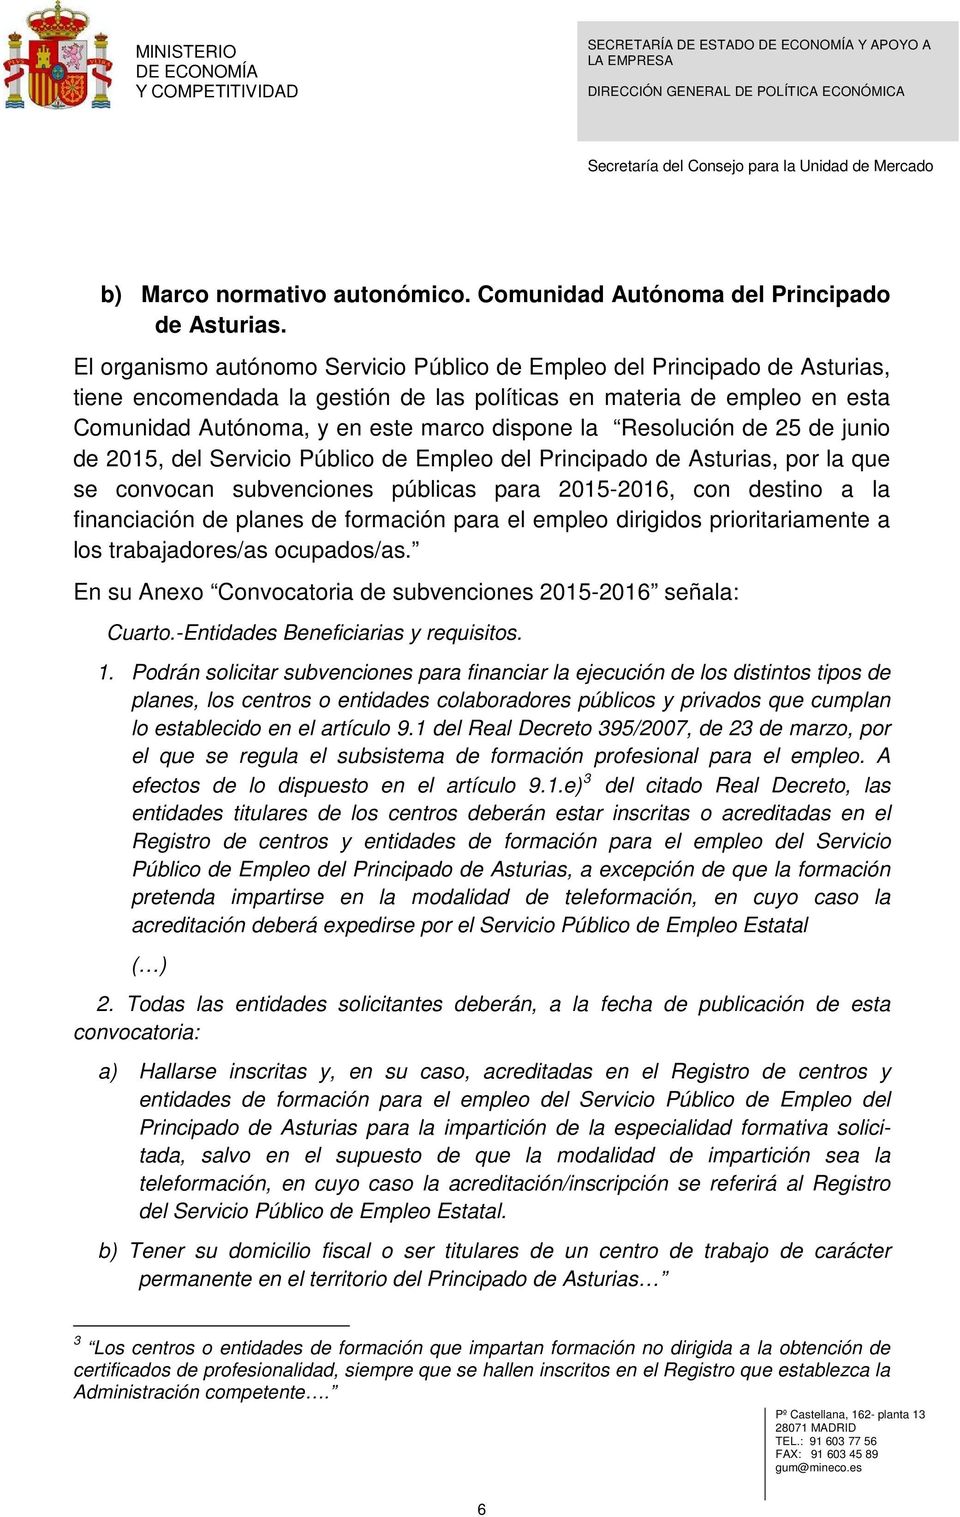 Resolución de 25 de junio de 2015, del Servicio Público de Empleo del Principado de Asturias, por la que se convocan subvenciones públicas para 2015-2016, con destino a la financiación de planes de